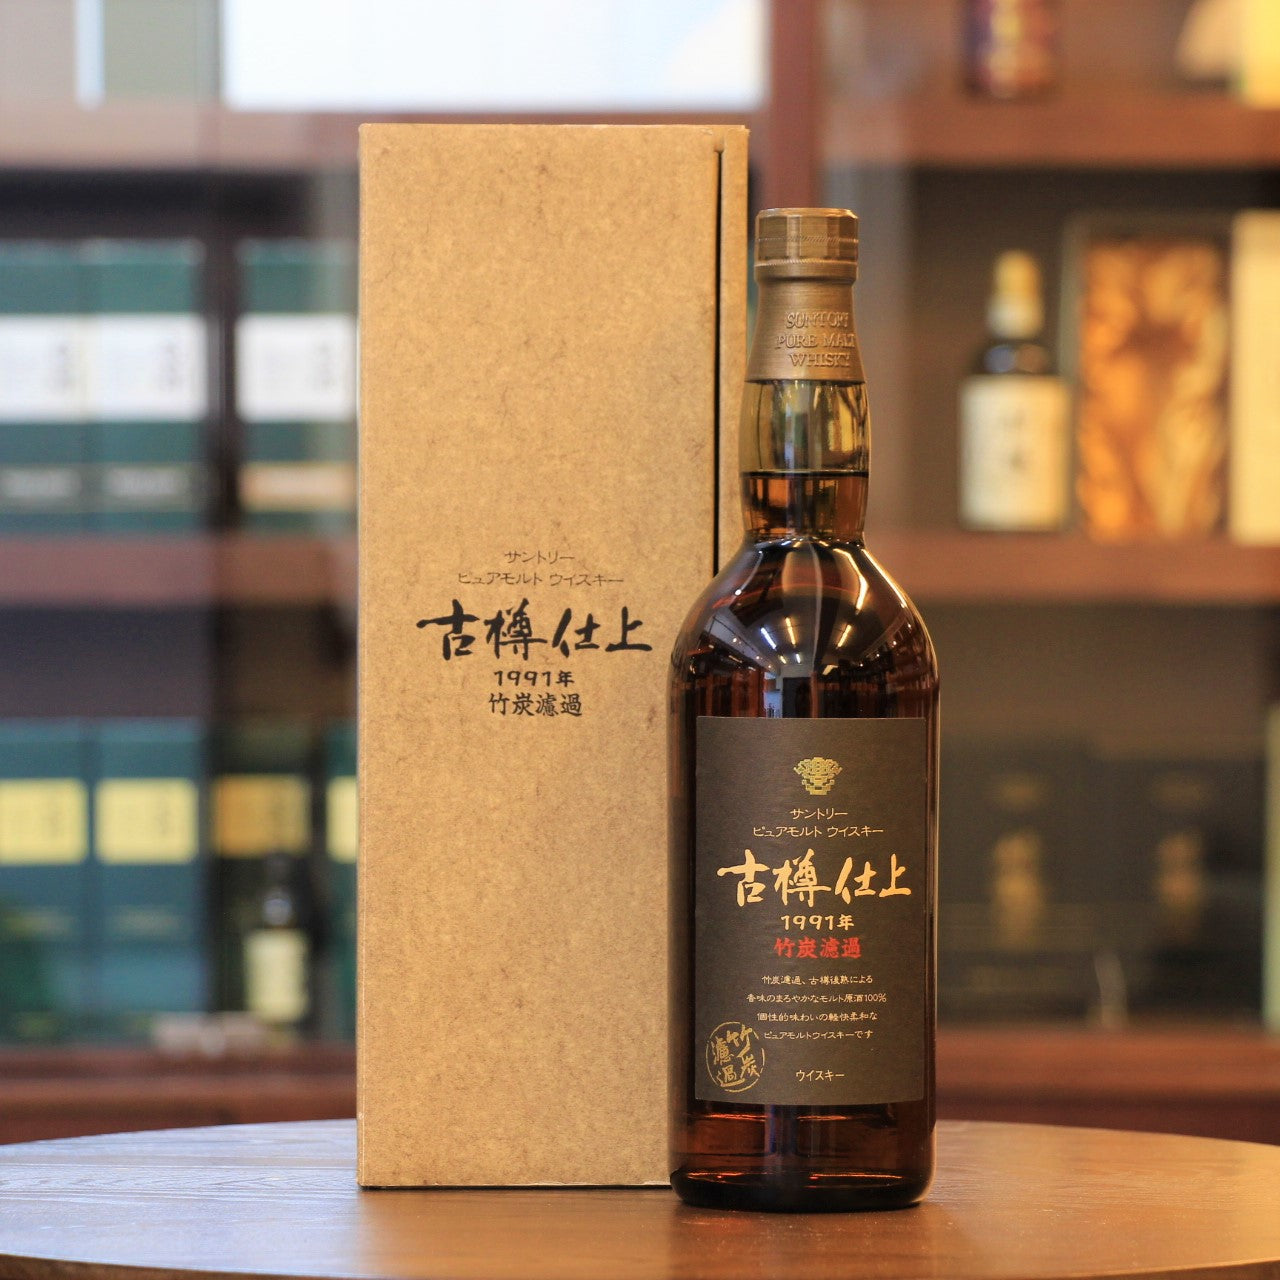 三得利 1991 年 Furudaru Shiage 日本純麥芽威士忌